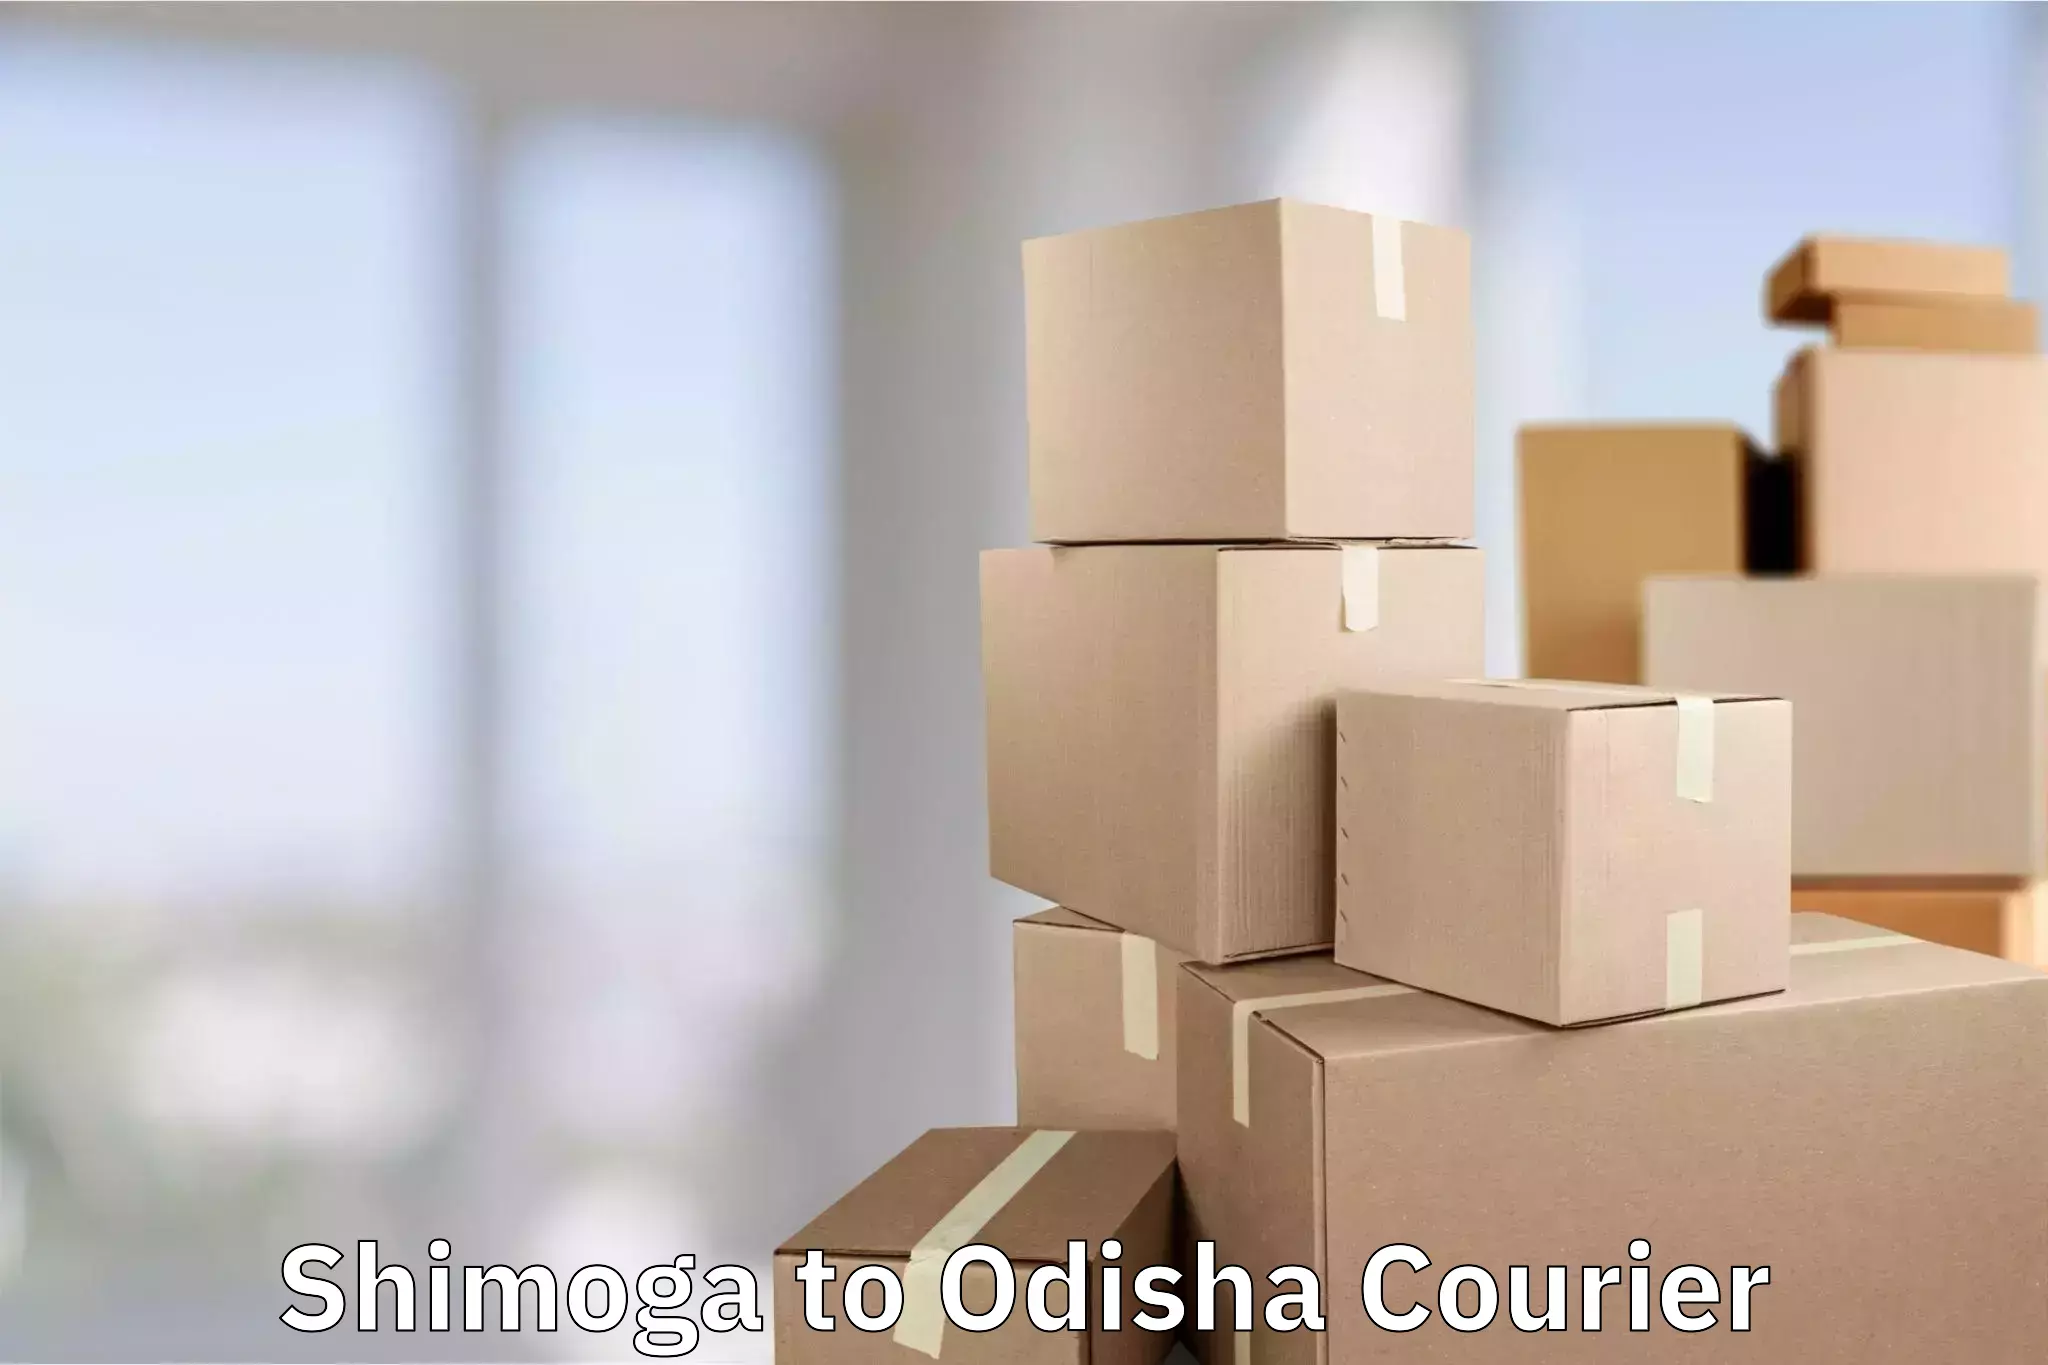 Luggage transport consultancy Shimoga to Odisha